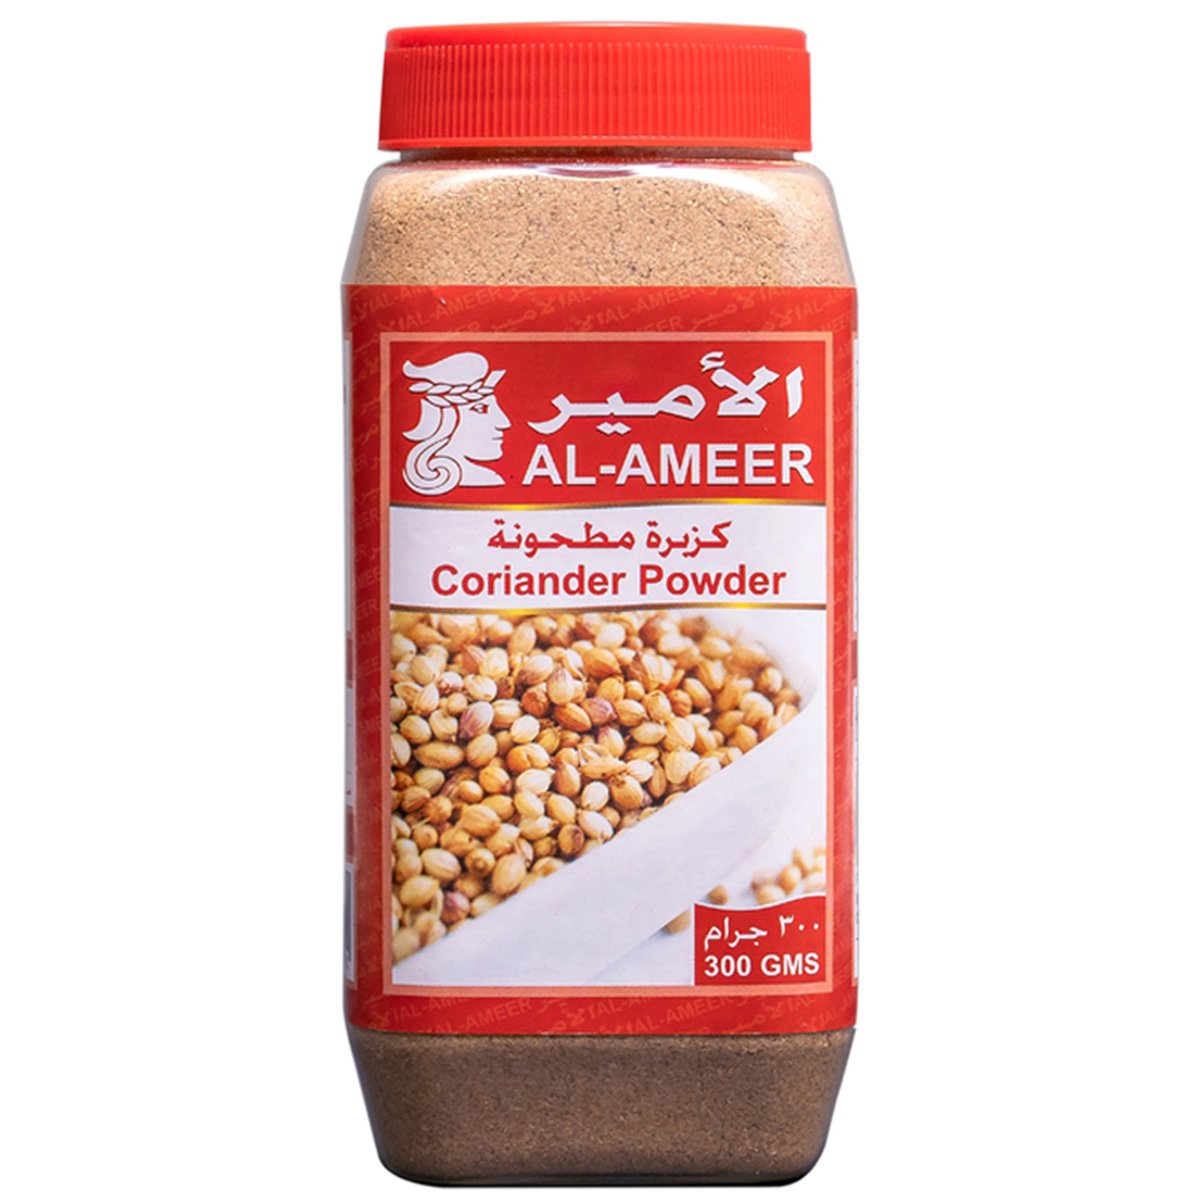 Al Ameer Coriander Powder 300g